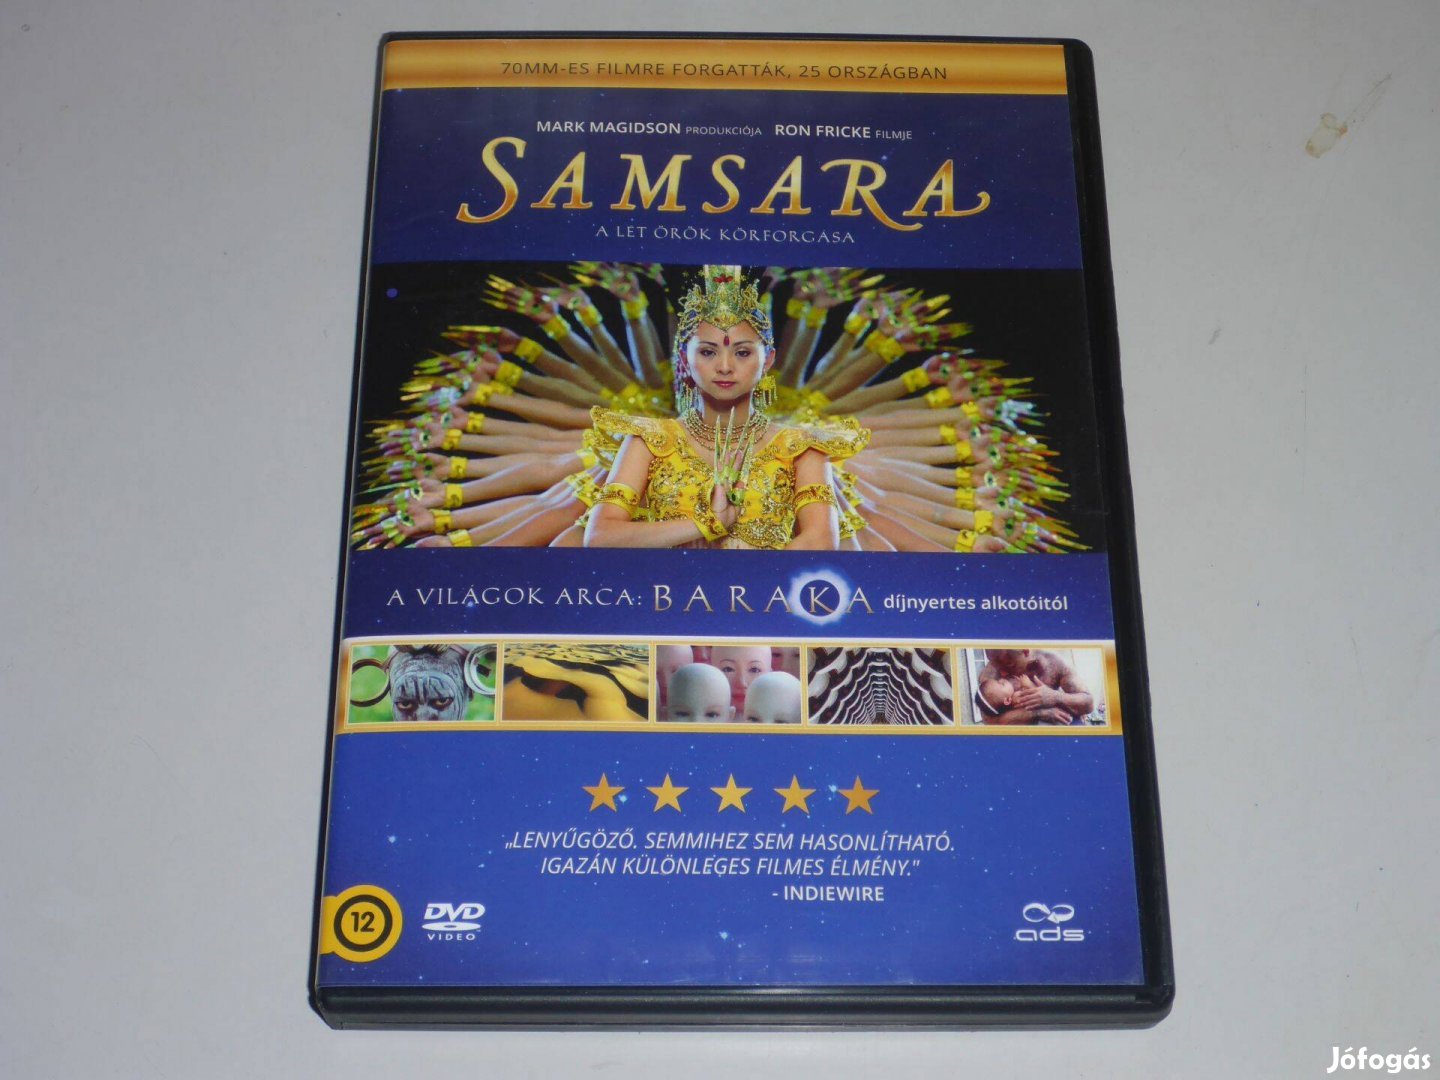 Samsara - A lét örök körforgása DVD film ;